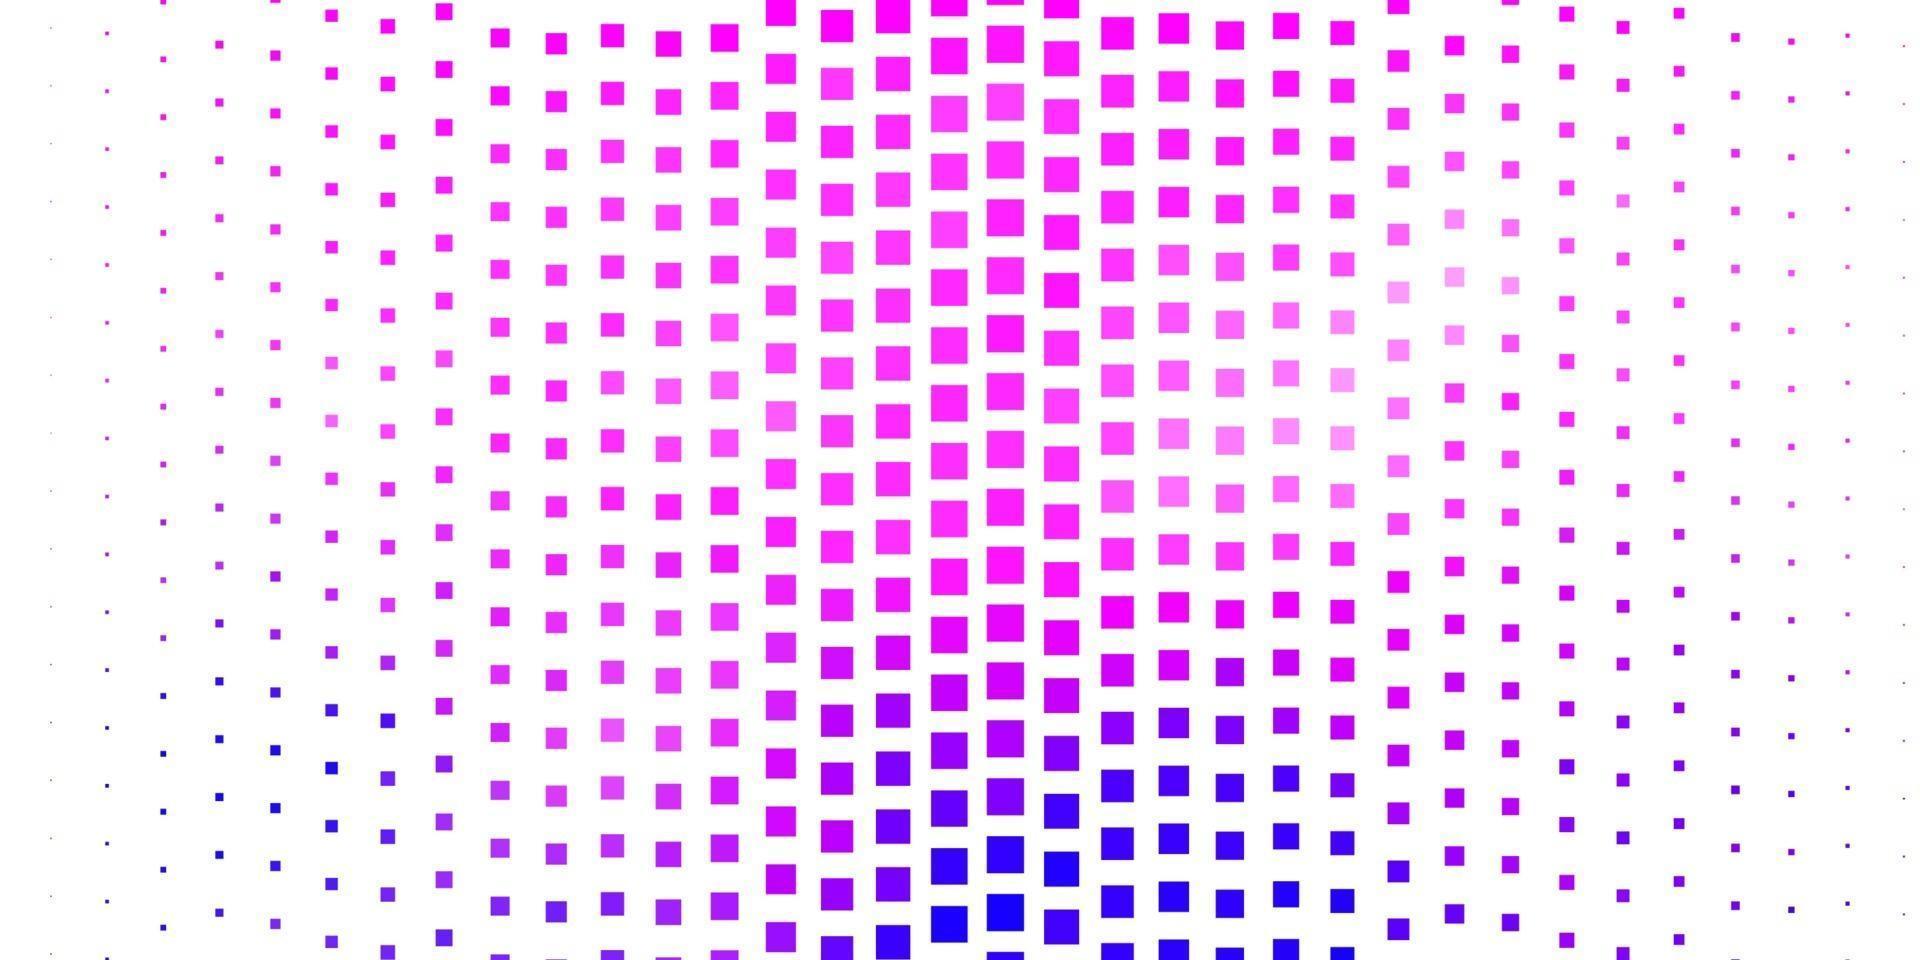 toile de fond de vecteur rose et bleu foncé avec des rectangles.